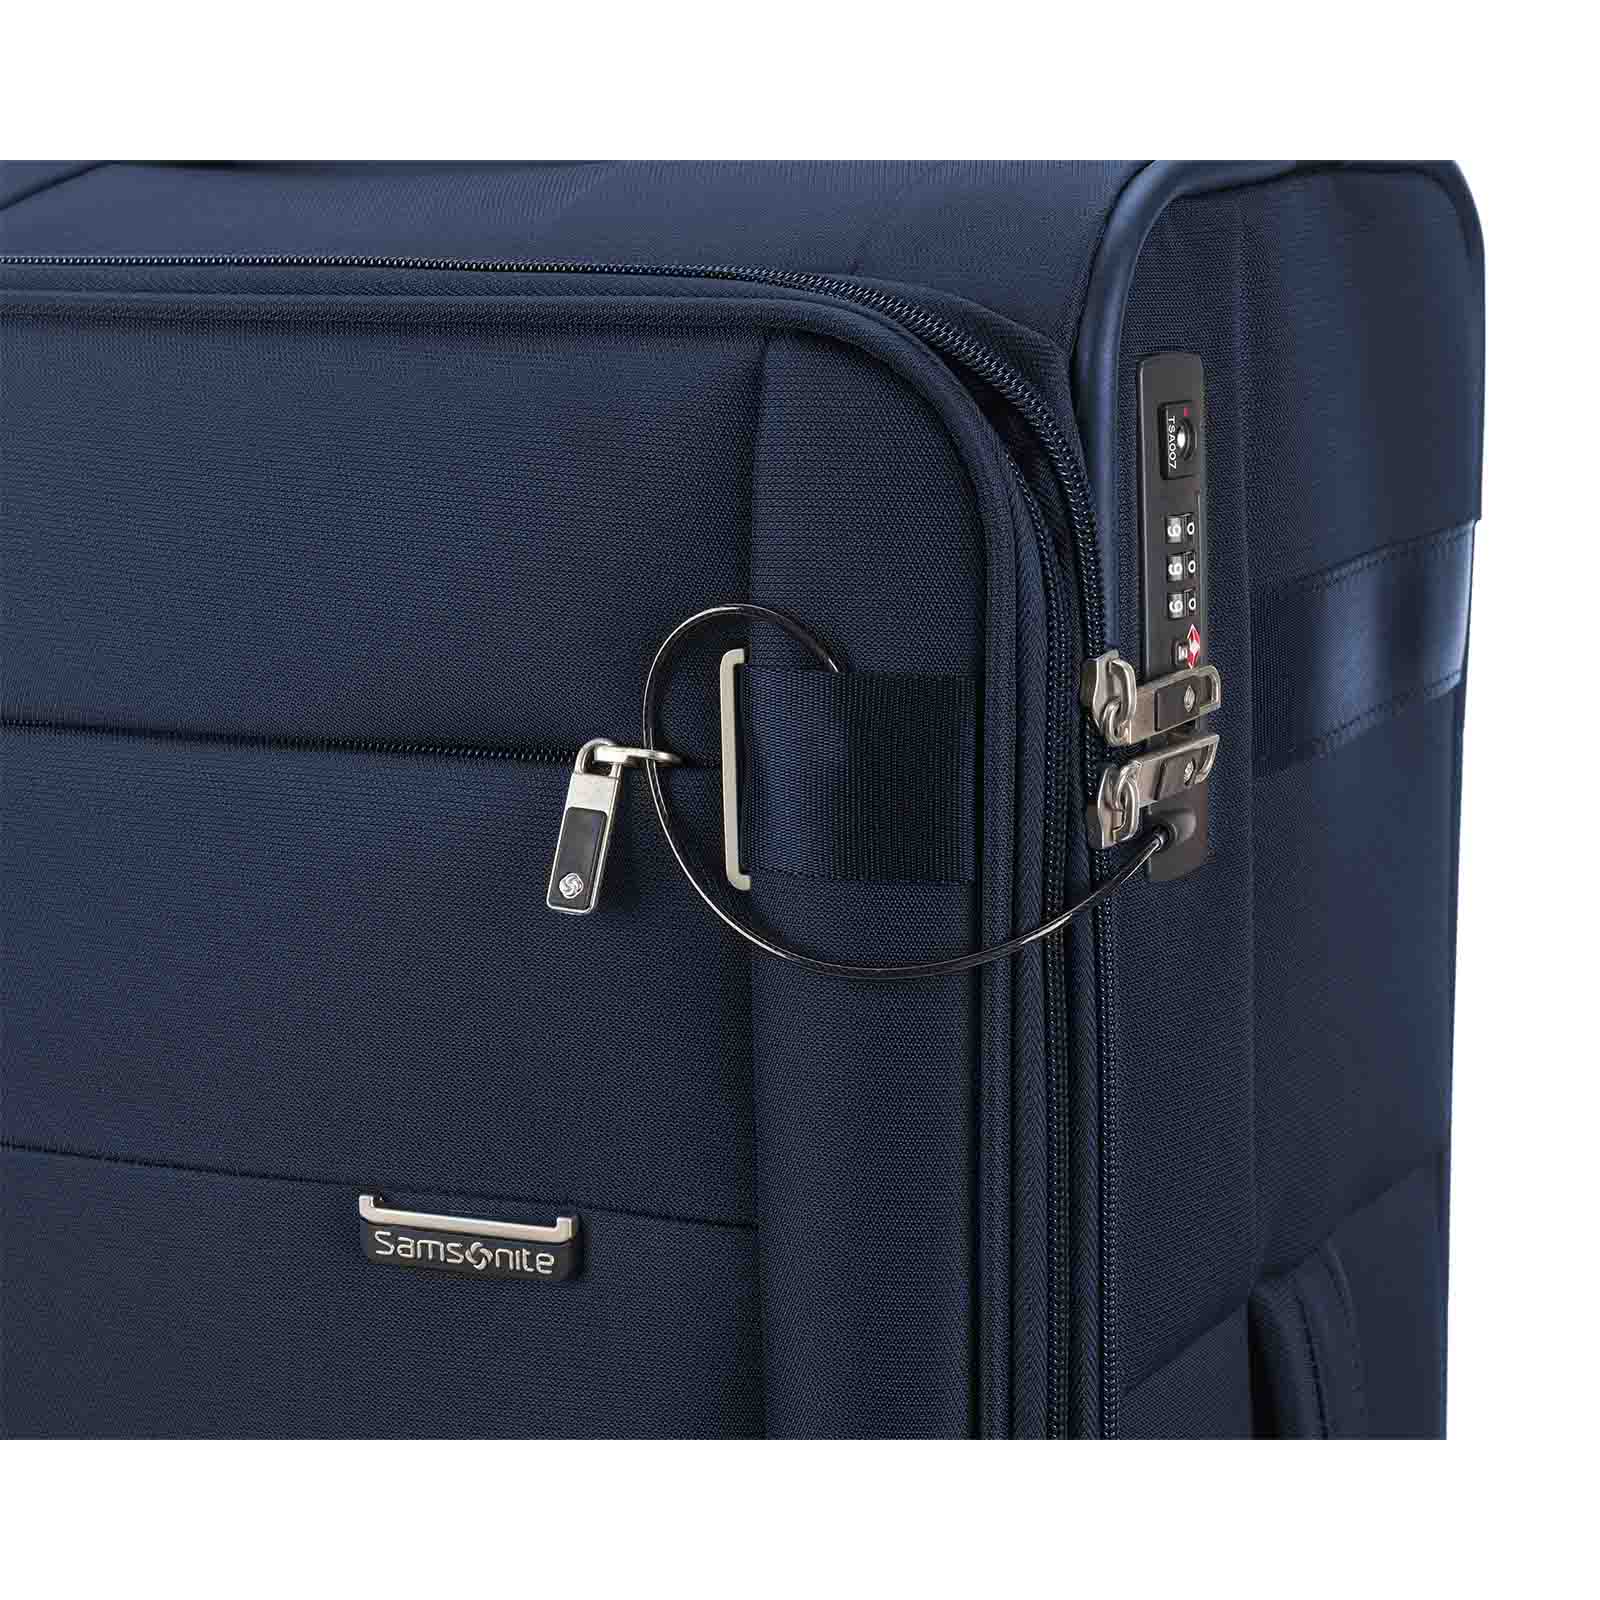 Samsonite-City-Rhythm-78cm-Suitcase-Navy-Logo